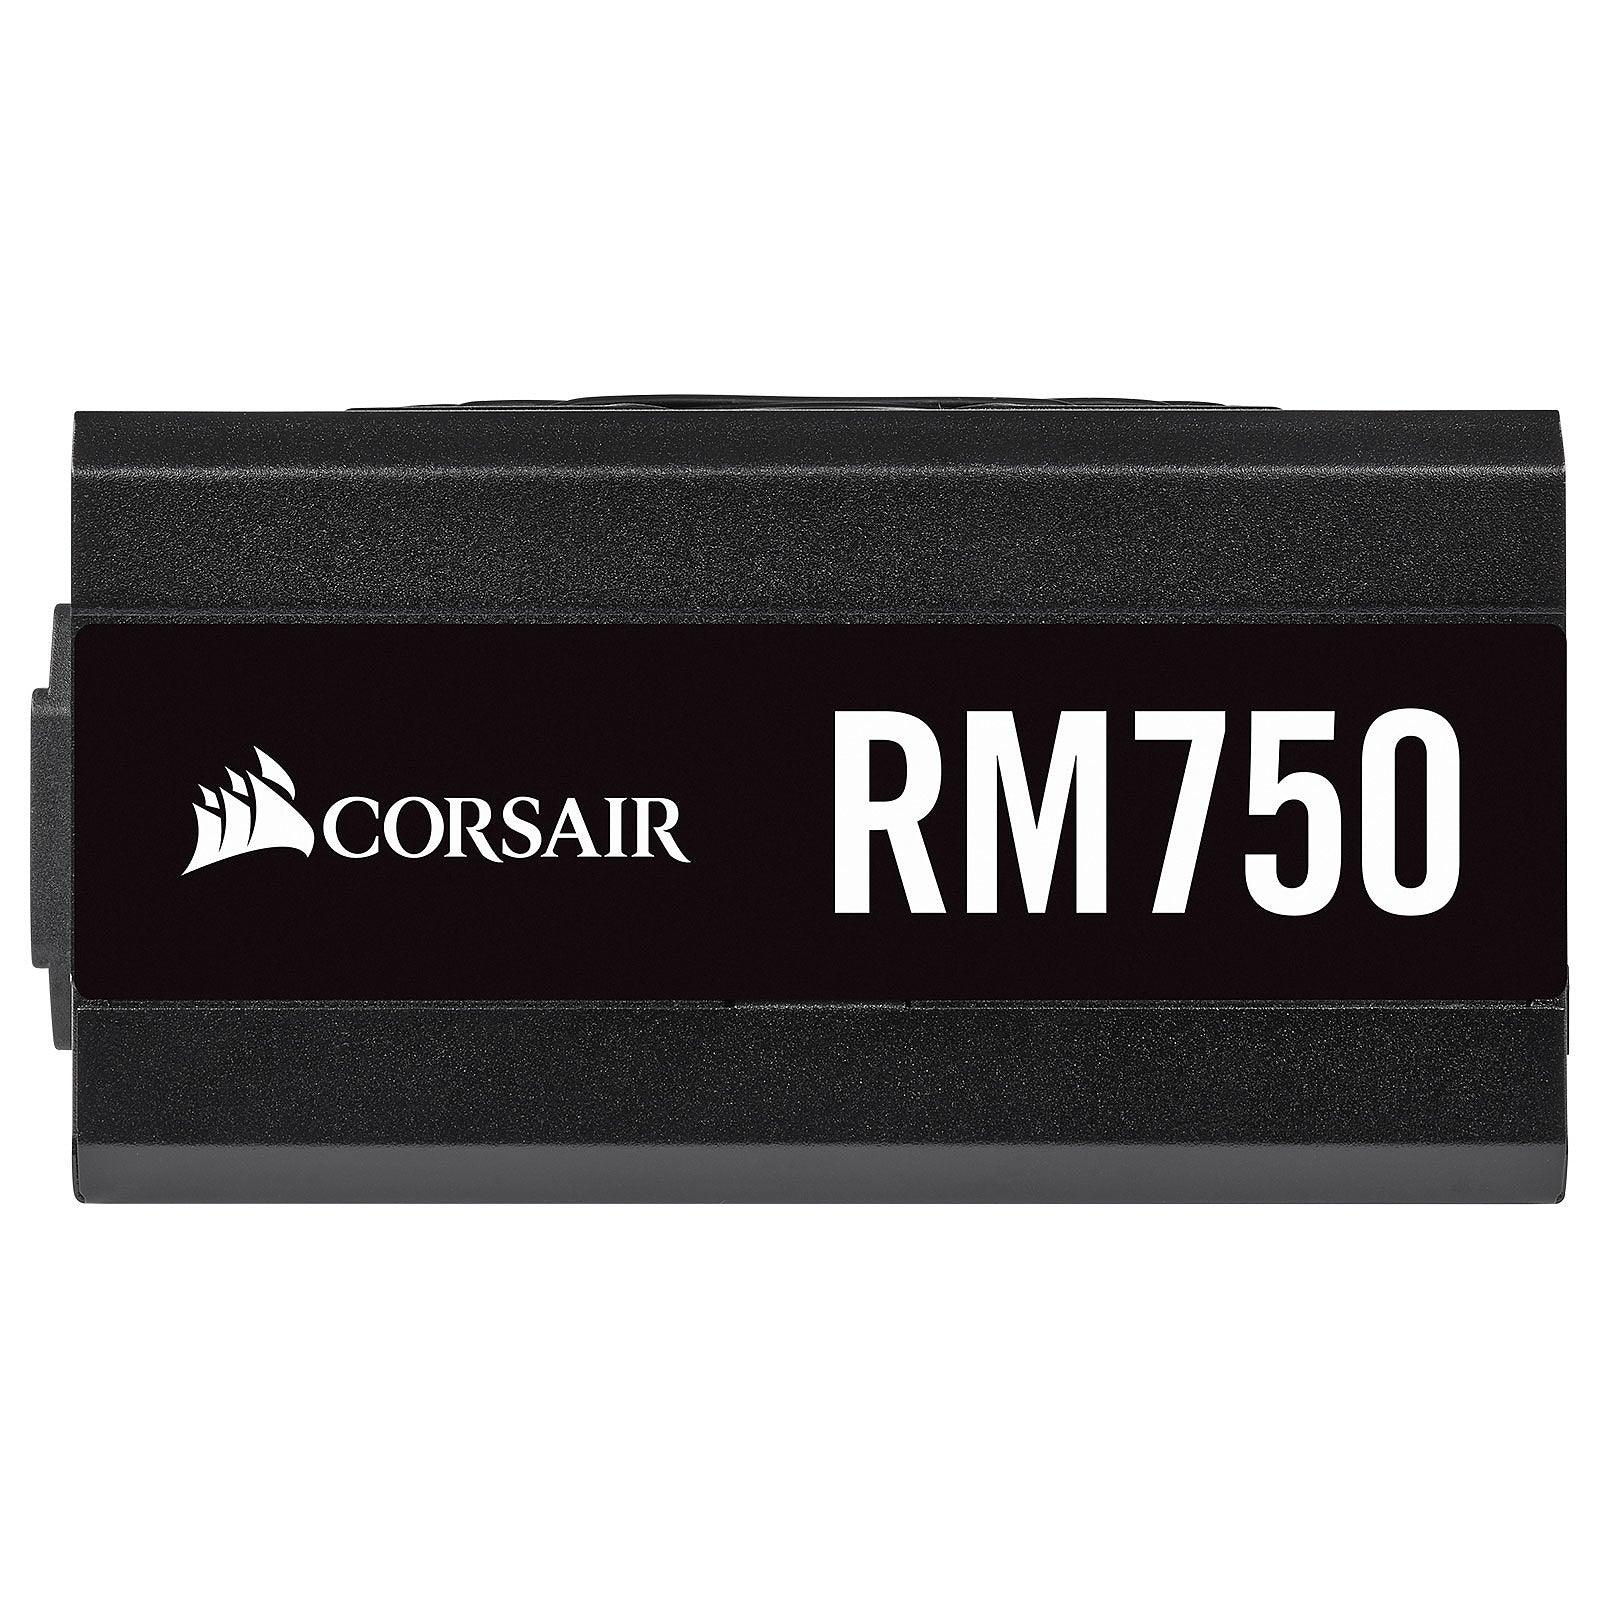 Corsair RM750 80Plus Gold Maroc prix Alimentation PC pas cher - smartmarket.ma